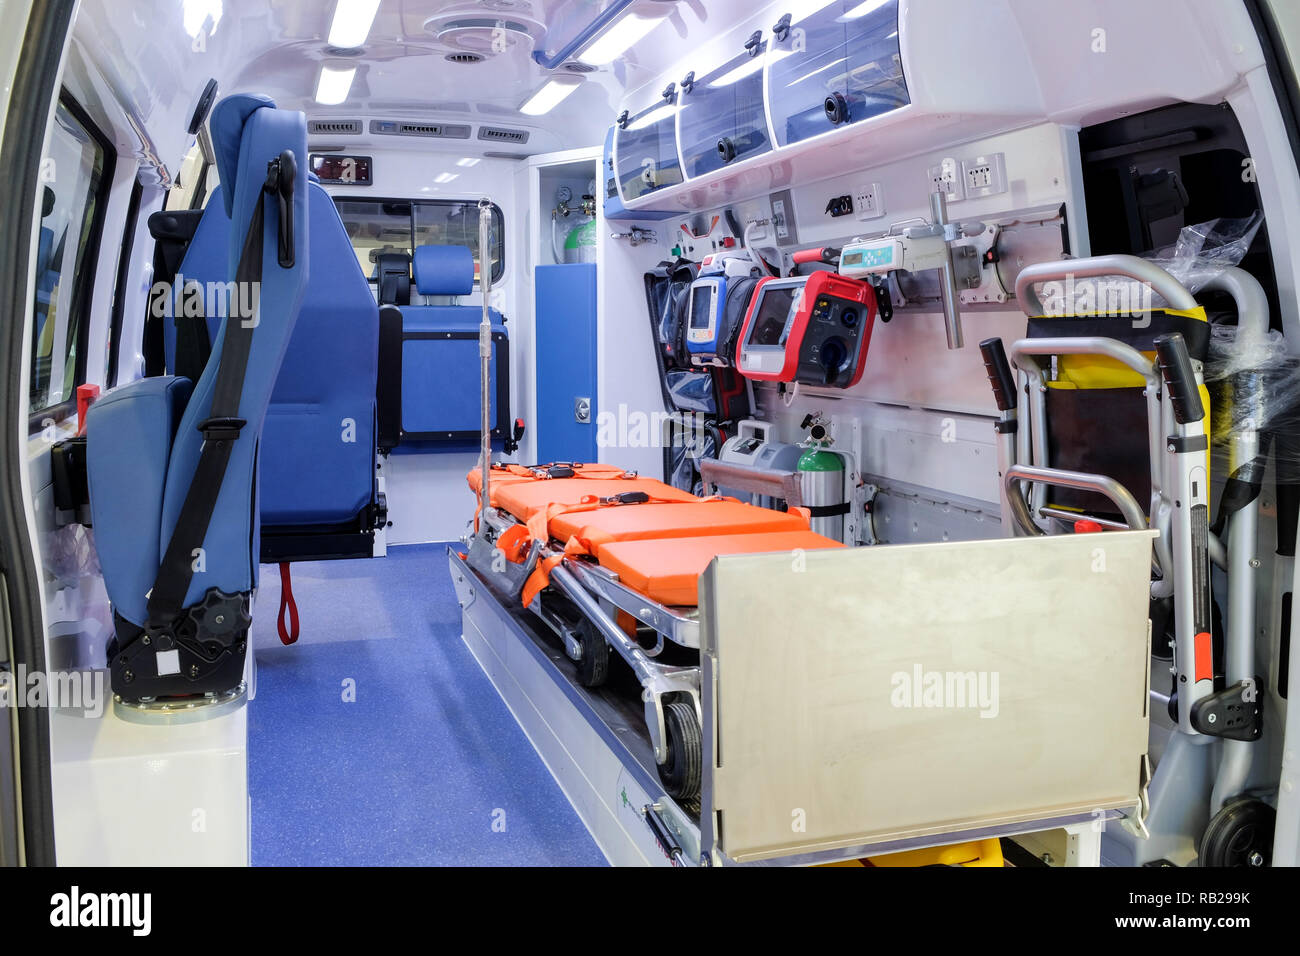 All'interno di un ambulanza con attrezzature mediche per aiutare i pazienti prima della consegna all'ospedale. Foto Stock